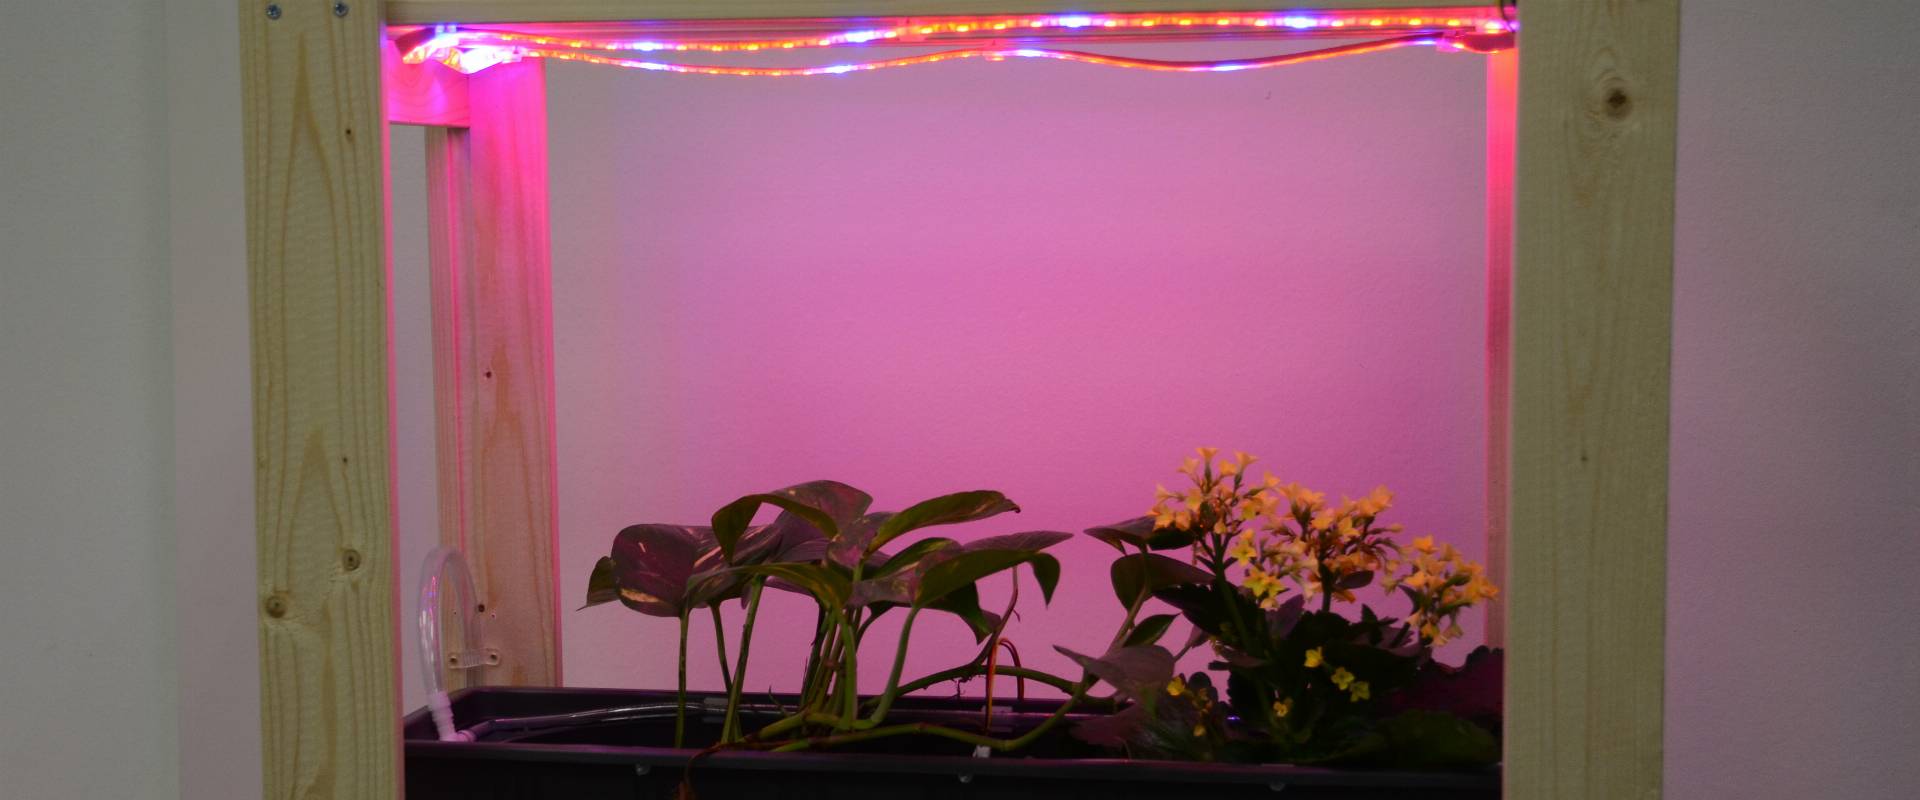 Ebene des smarten Blumenregals mit Bewässerung, Feuchtigkeitsmessung und Beleuchtung